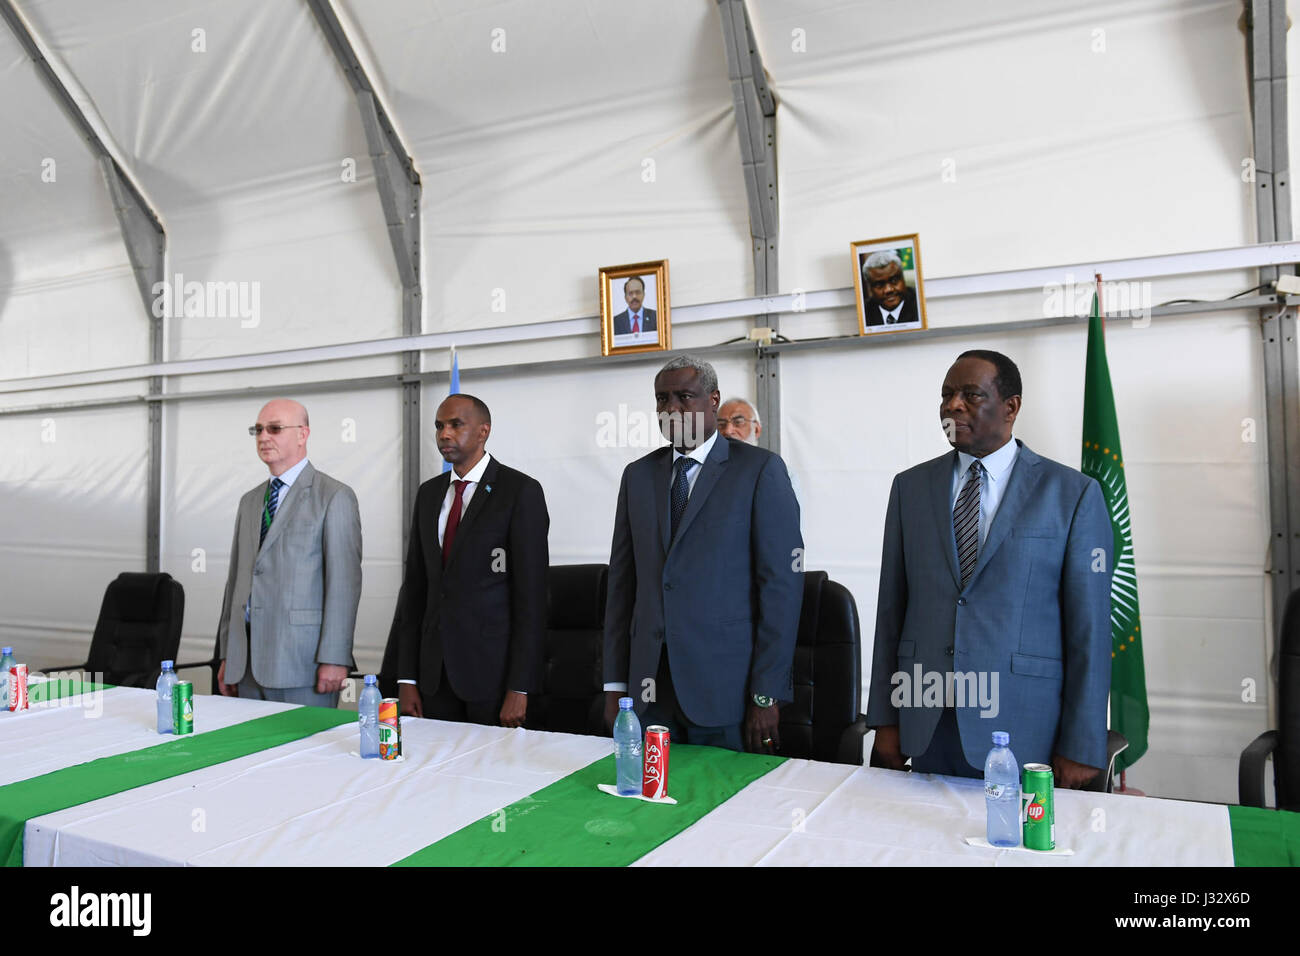 Le commissaire de l'Union africaine pour la paix et la sécurité, l'Ambassadeur Smail Chergui (à gauche), le Premier Ministre de la Somalie, Hassan Ali Kheyre (2e à gauche), le président de la Commission de l'Union africaine, M. Moussa Faki Mahamat (deuxième à droite) et le Représentant spécial de l'UA en Somalie l'Ambassadeur Francisco Madeira (à droite), un support pour l'hymne de l'Union africaine. C'était dans les communications de la réunion avec le personnel de l'UA en Somalie au cours de sa première visite dans le pays le 18 mars 2017. L'AMISOM Photo/Omar Abdisalan Banque D'Images